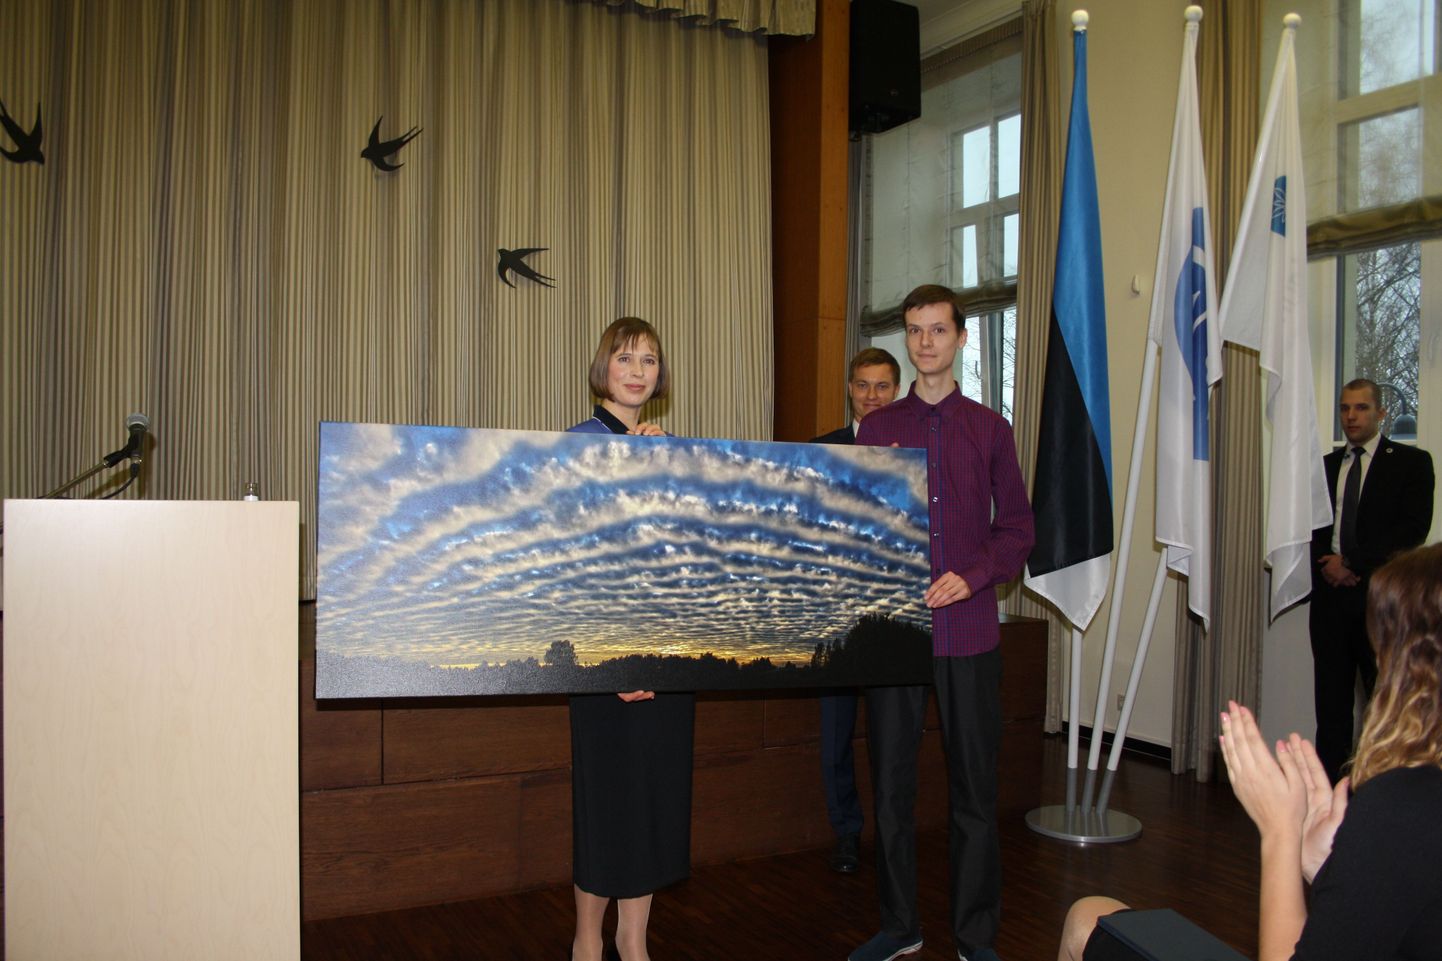 Jõgevamaa gümnaaisumi õpilane Kairo Kiitsak (paremal) kinkis presidendile enda tehtud üleilmsel pilvefotokonkursil võidu toonud pildi.